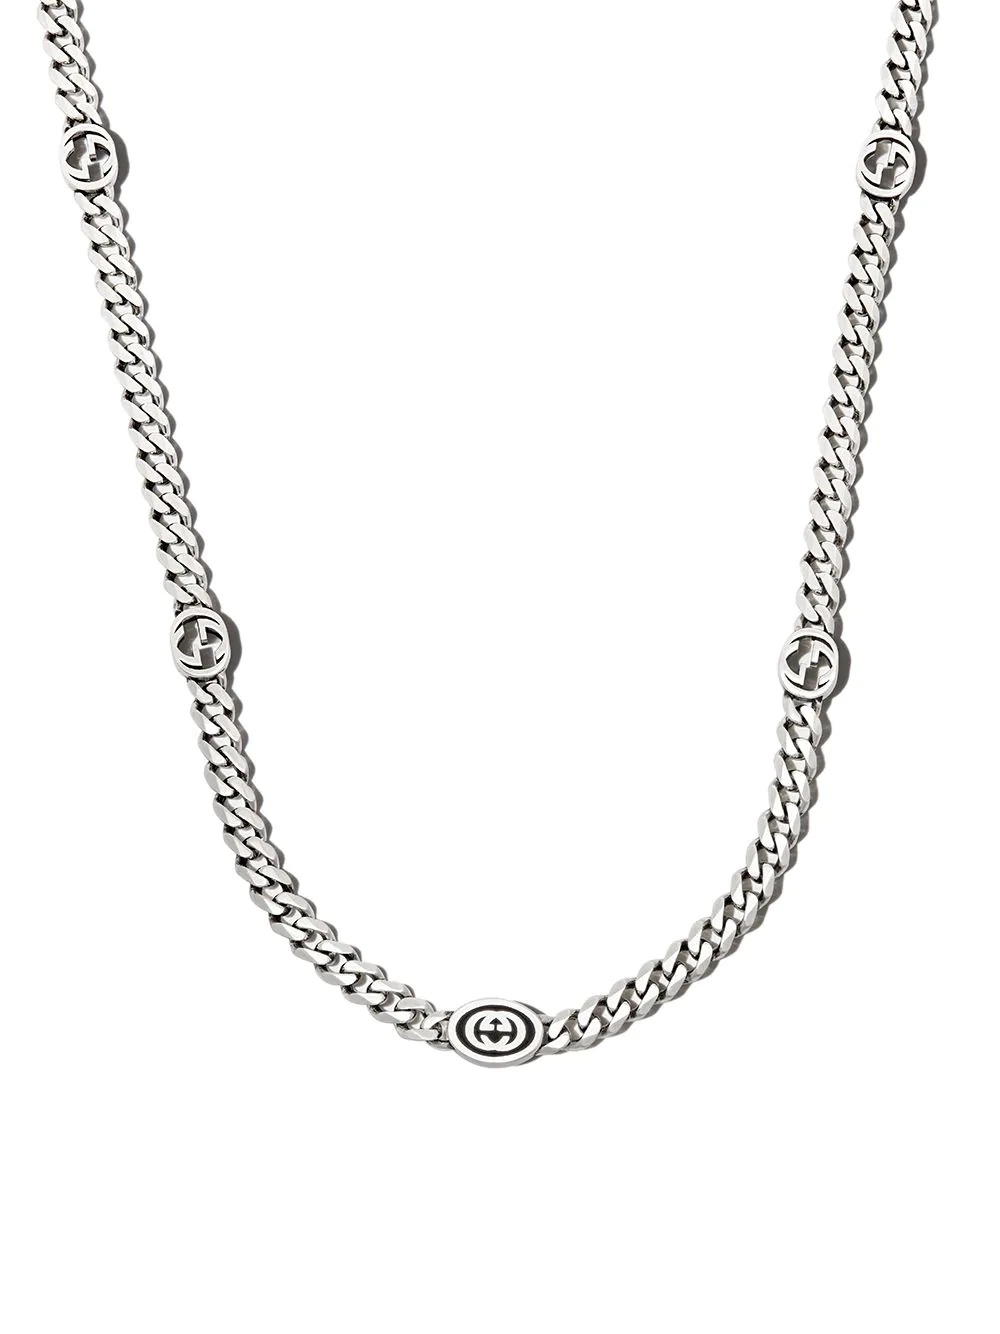 Interlocking G station chain necklace - 1